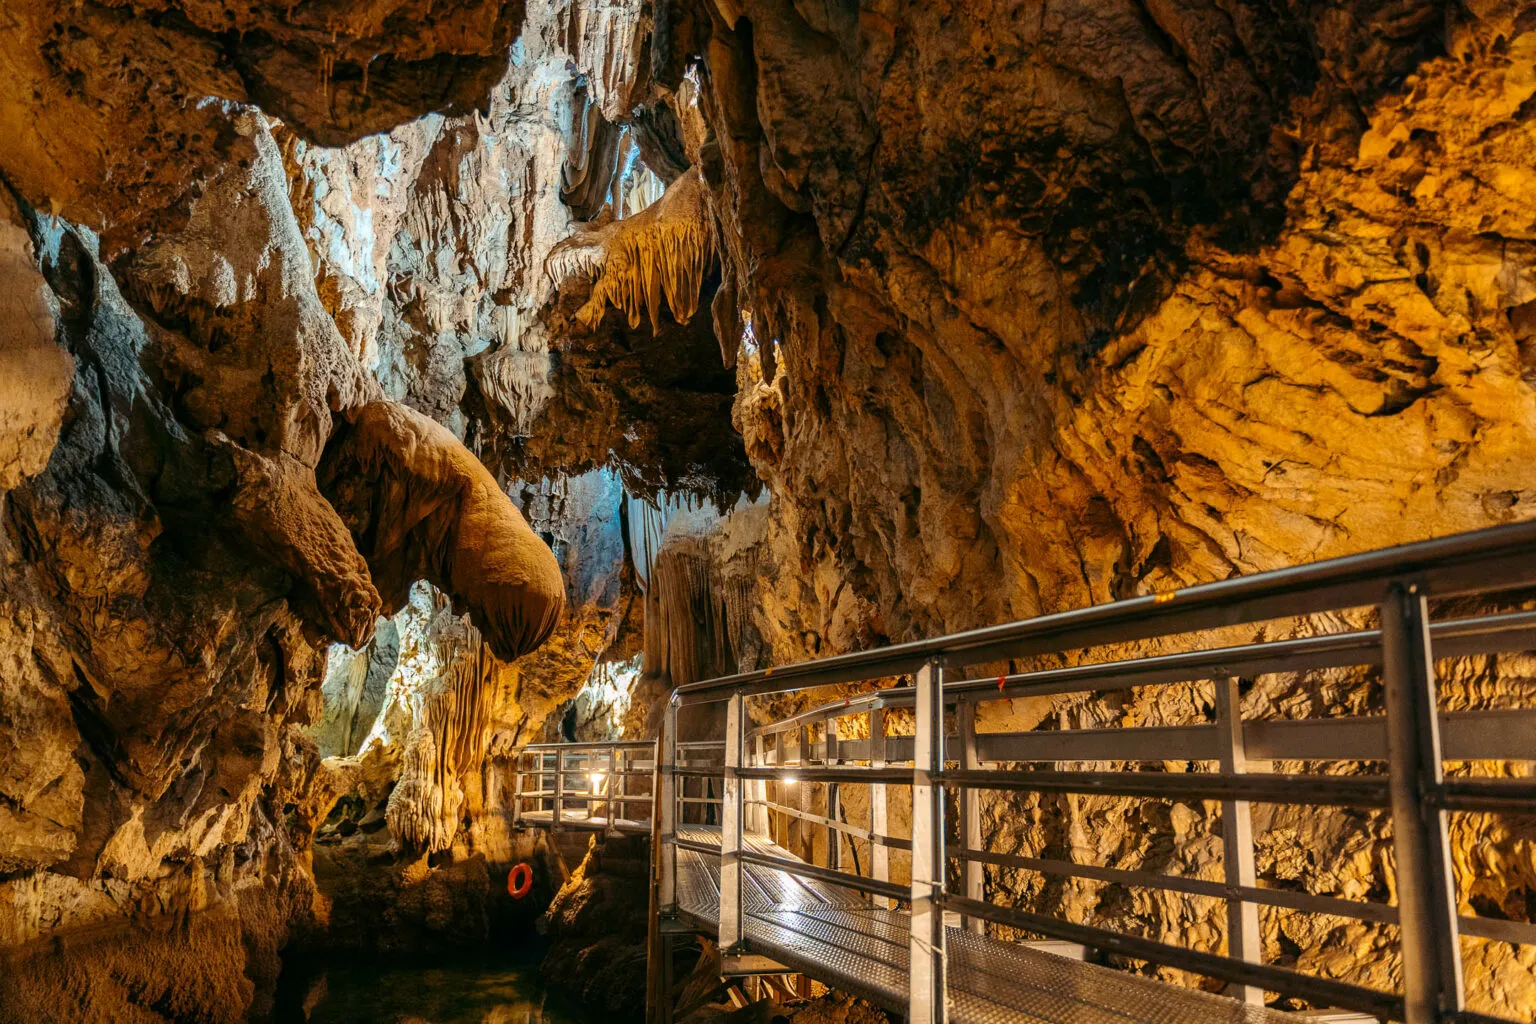 Σπήλαιο Λιμνών στα Καλάβρυτα: Ο «μαγικός» προορισμός που αξίζει να επισκεφθείτε (φώτο)